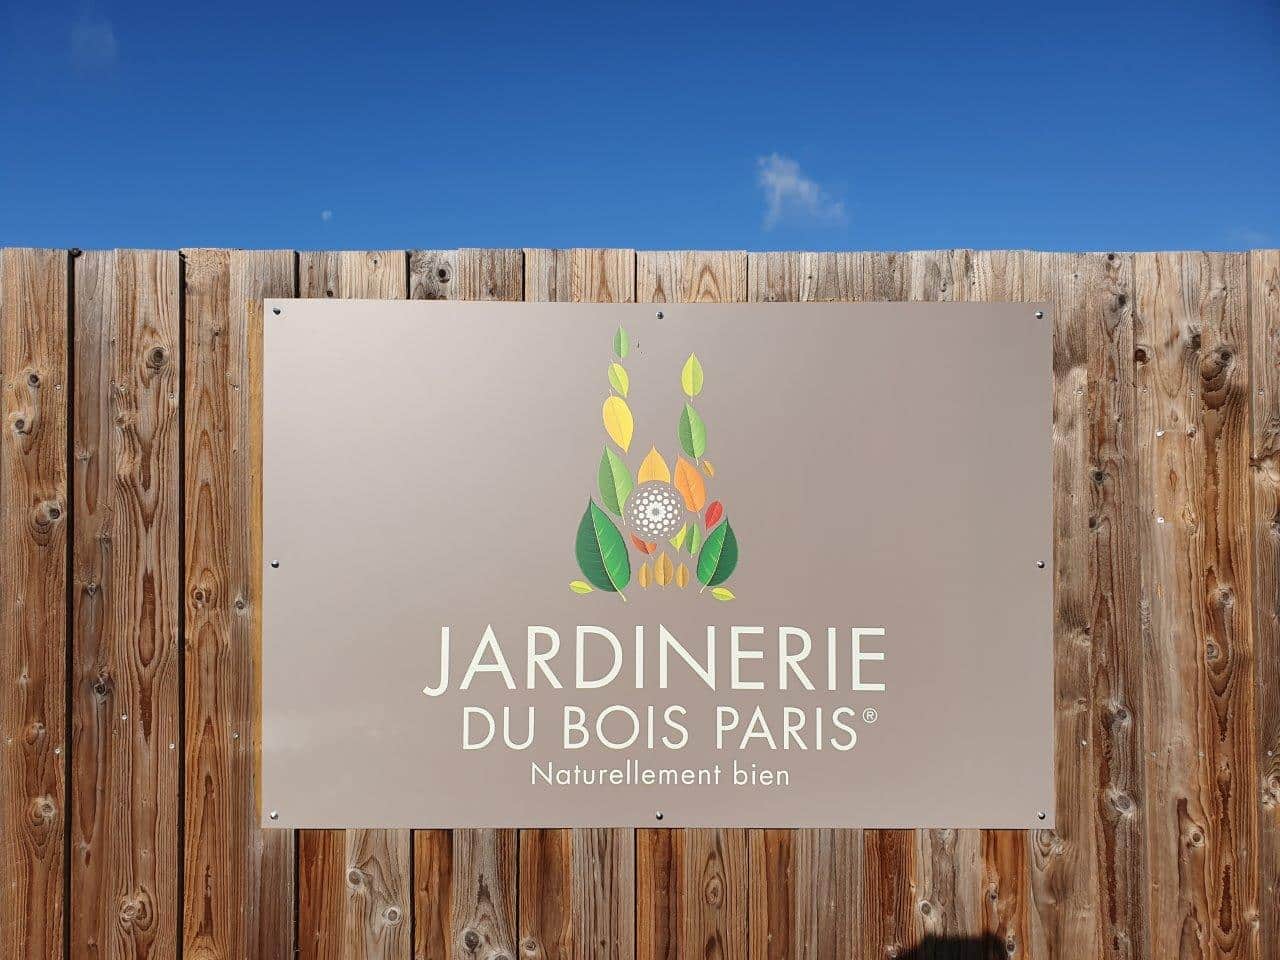 [Photo] Le réseau de Jardinerie J’DEA présente son nouveau concept “Animalerie ” à la Jardinerie du Bois de Paris